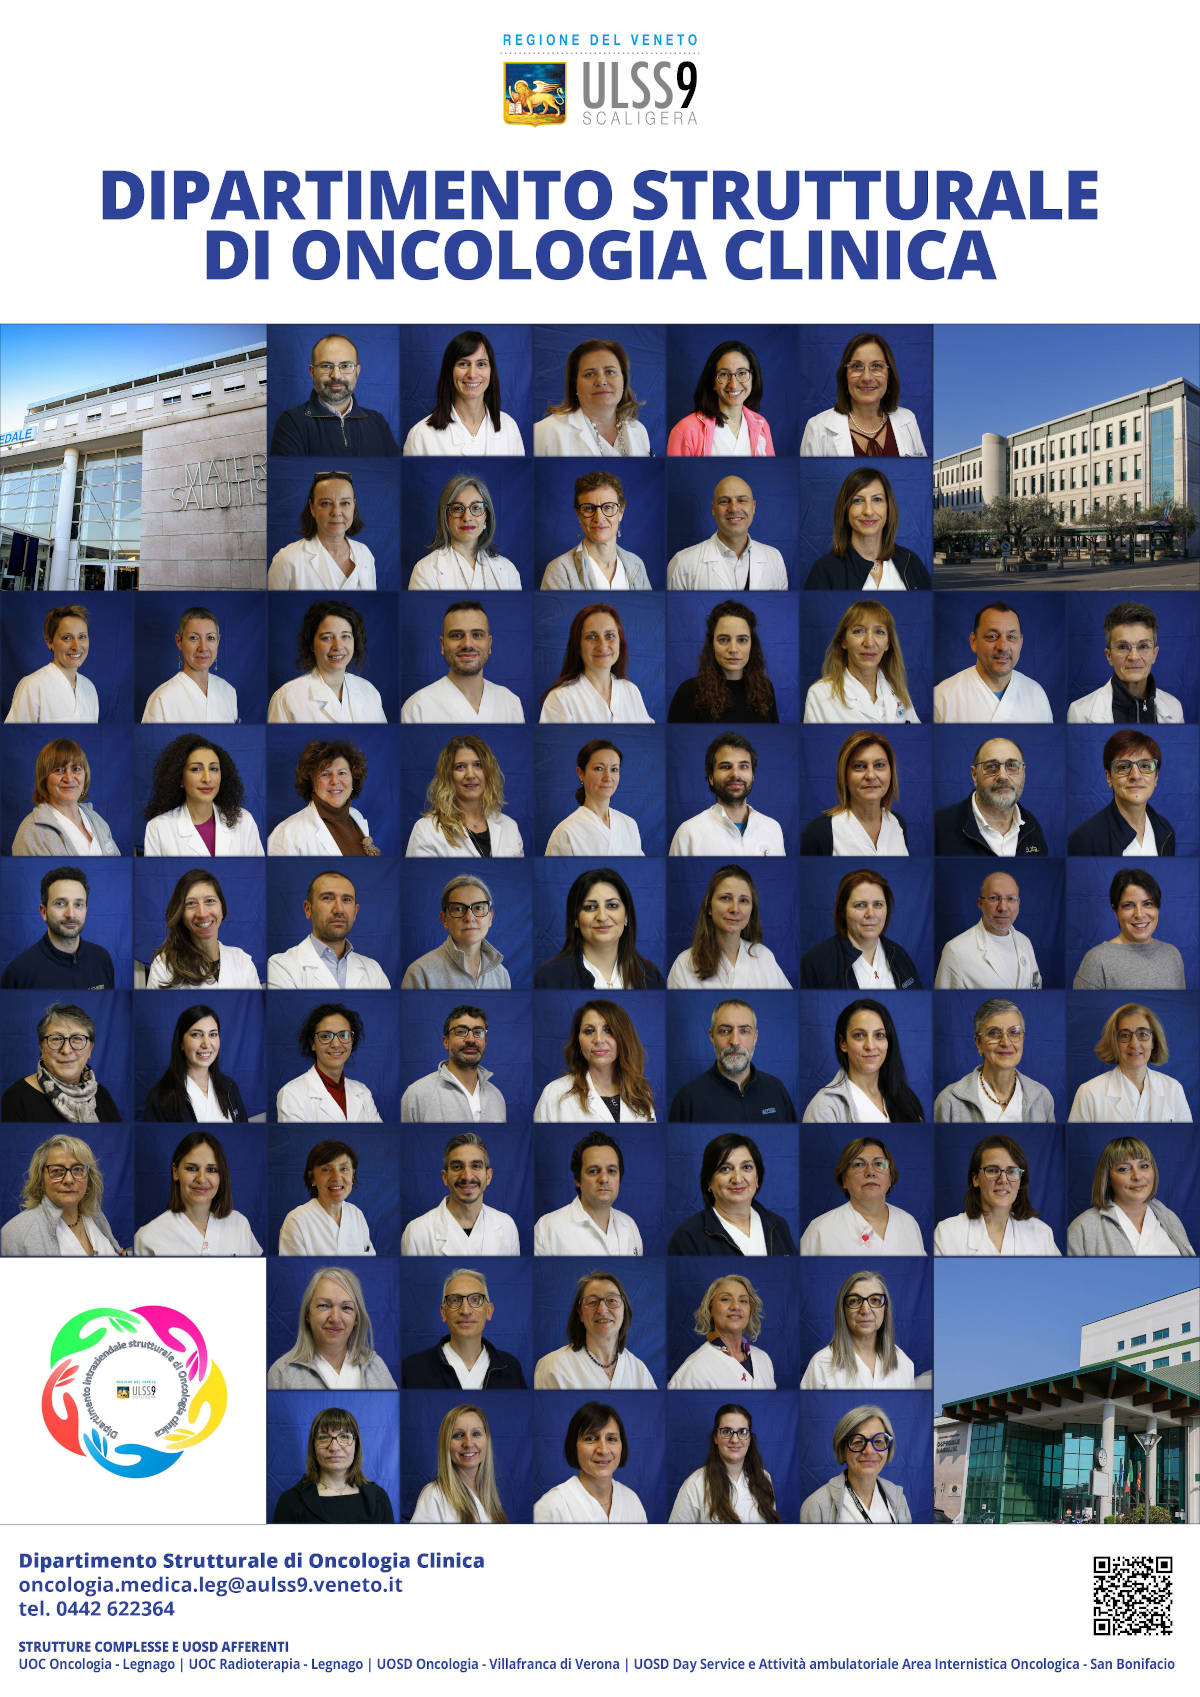 Locandina con immagini dei componenti del Dipartimento Oncologia Clinica